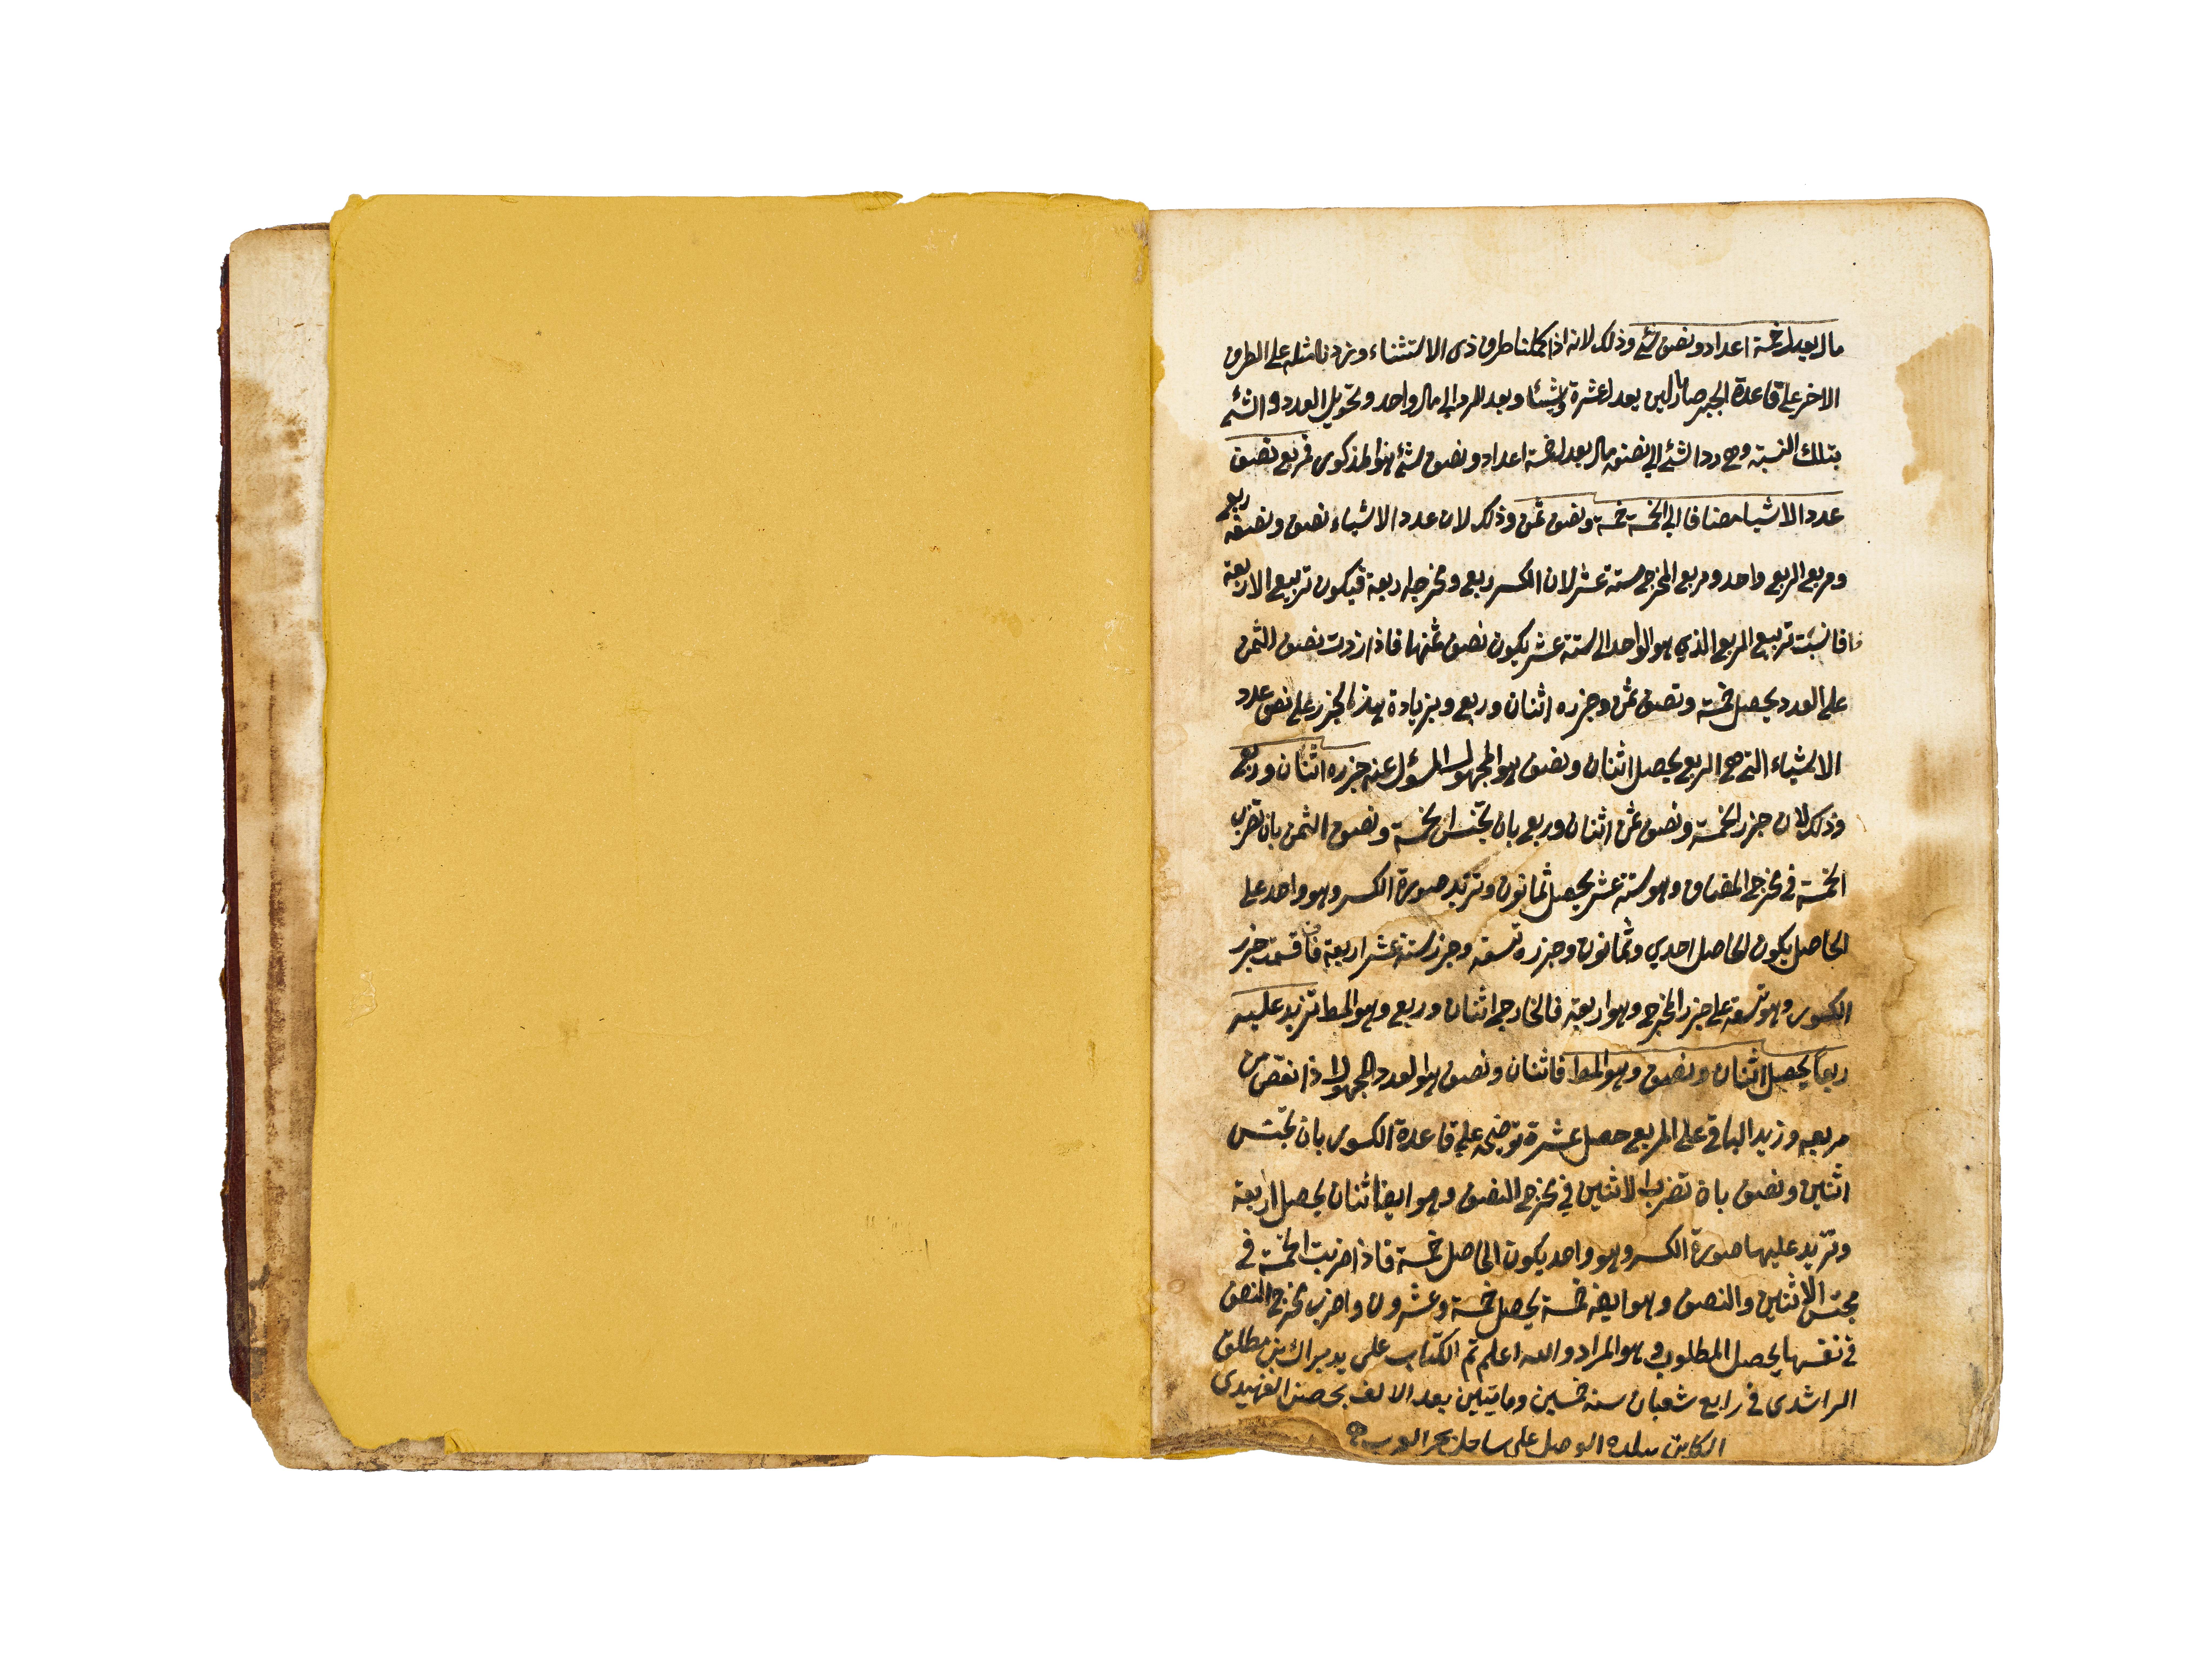 NUZHAT ALEUQUL WA- ALBAB LI MARIFAT AL-HISAB, COPIED BY BARAK BIN MATALK AL-RASHDI IN 1250AH - Image 6 of 7